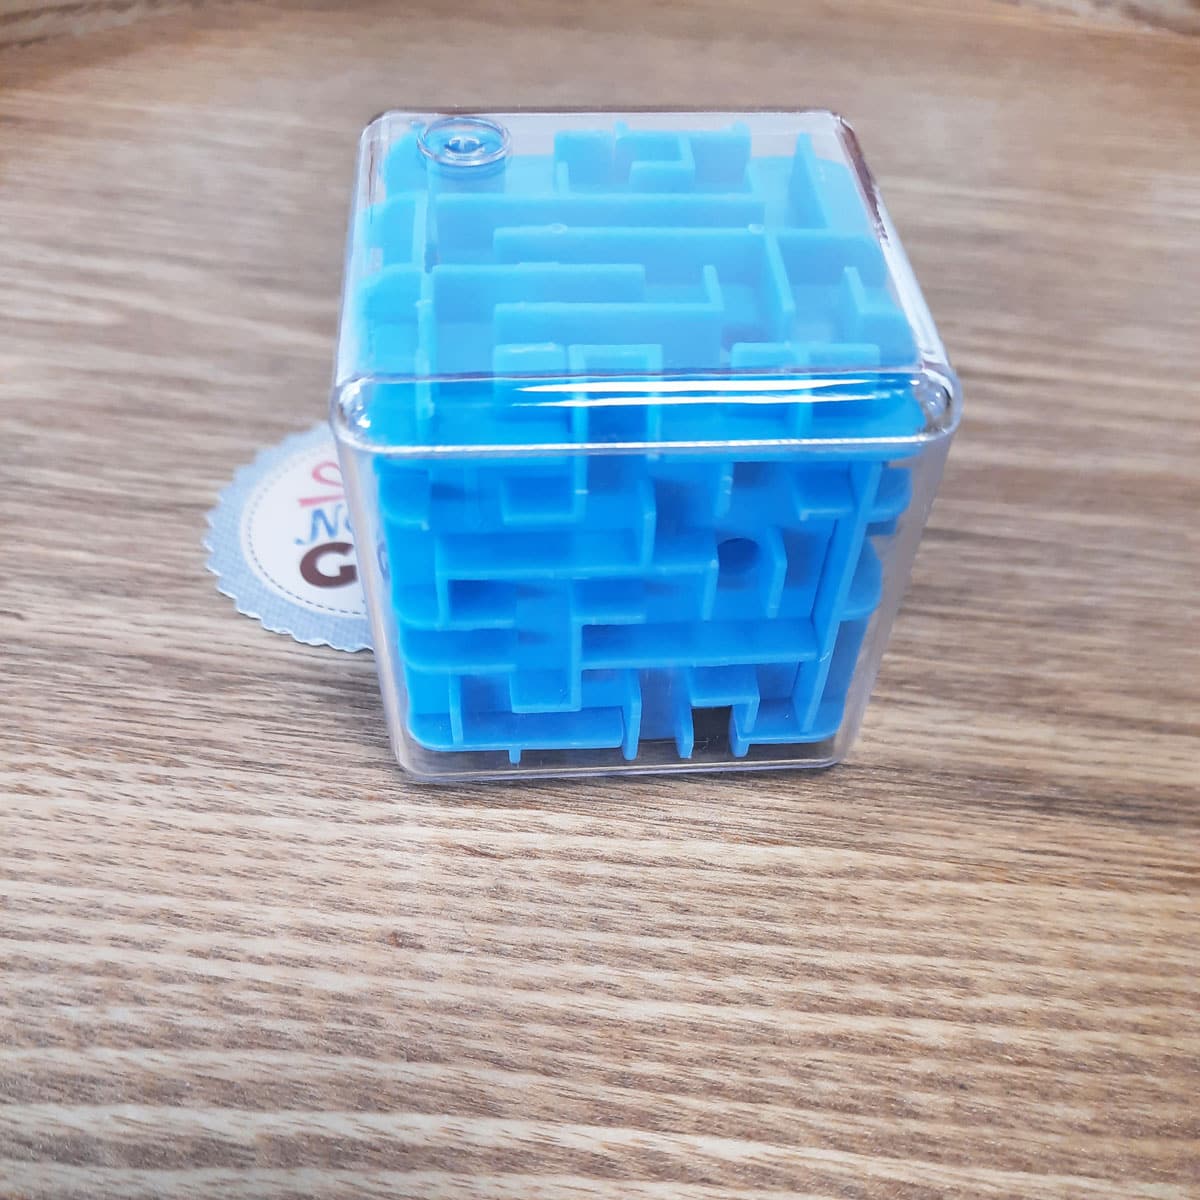 Jeu Labyrinthe cube en 3D - casse tête